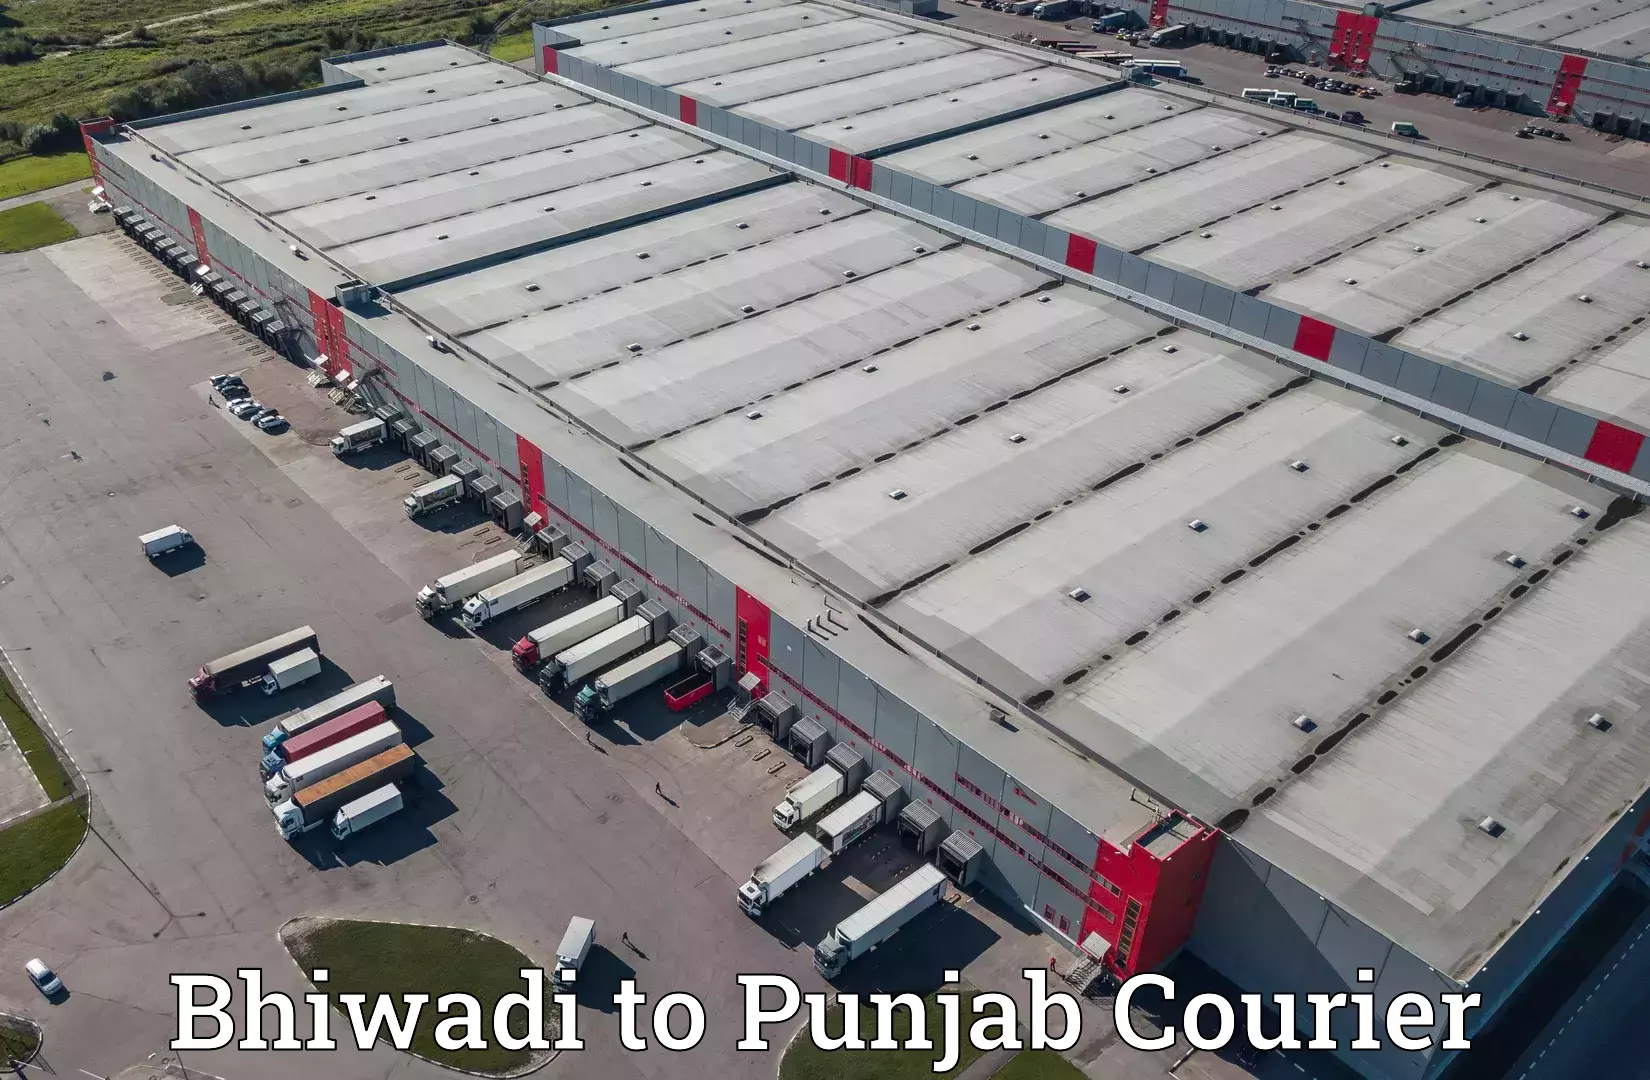 Professional courier handling Bhiwadi to Punjab